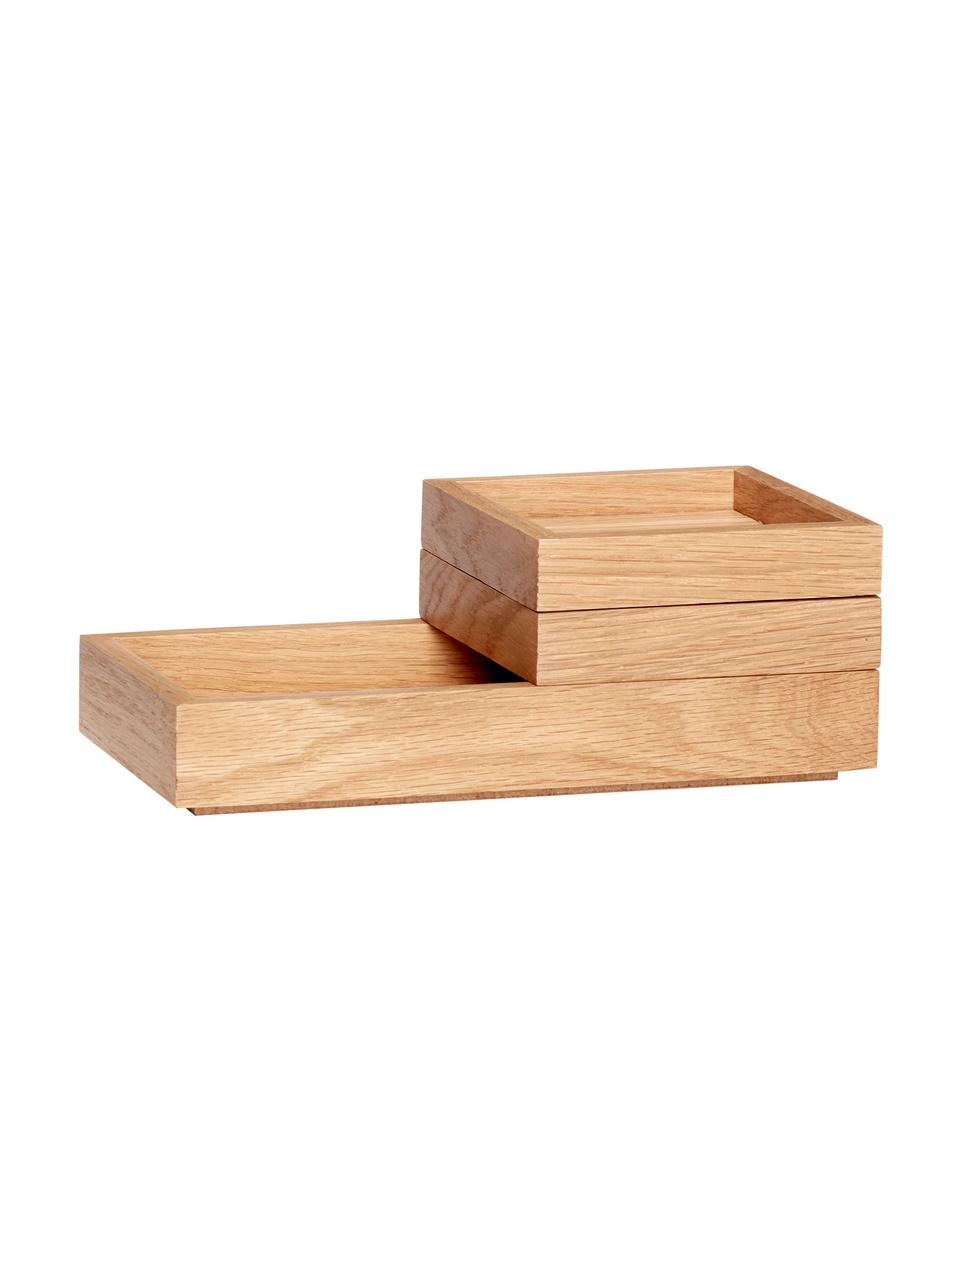 Set de cajas apilables Klara, 3 uds., Chapa de roble, madera de roble con certificado FSC, Madera, Set de diferentes tamaños